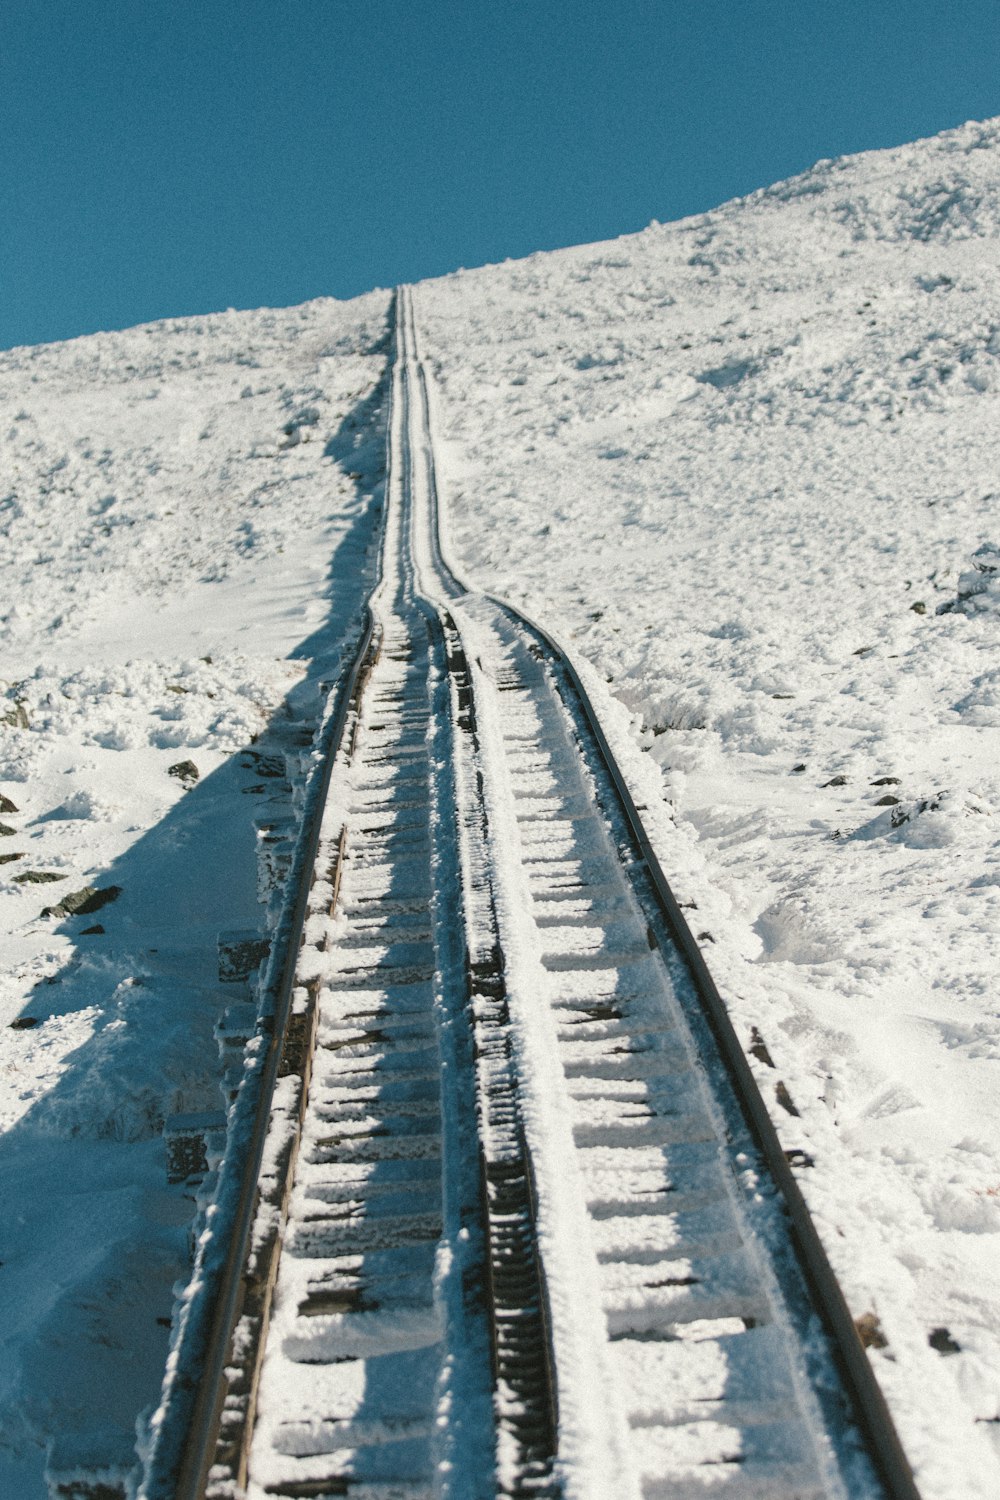 black metal rail surrounded white snow